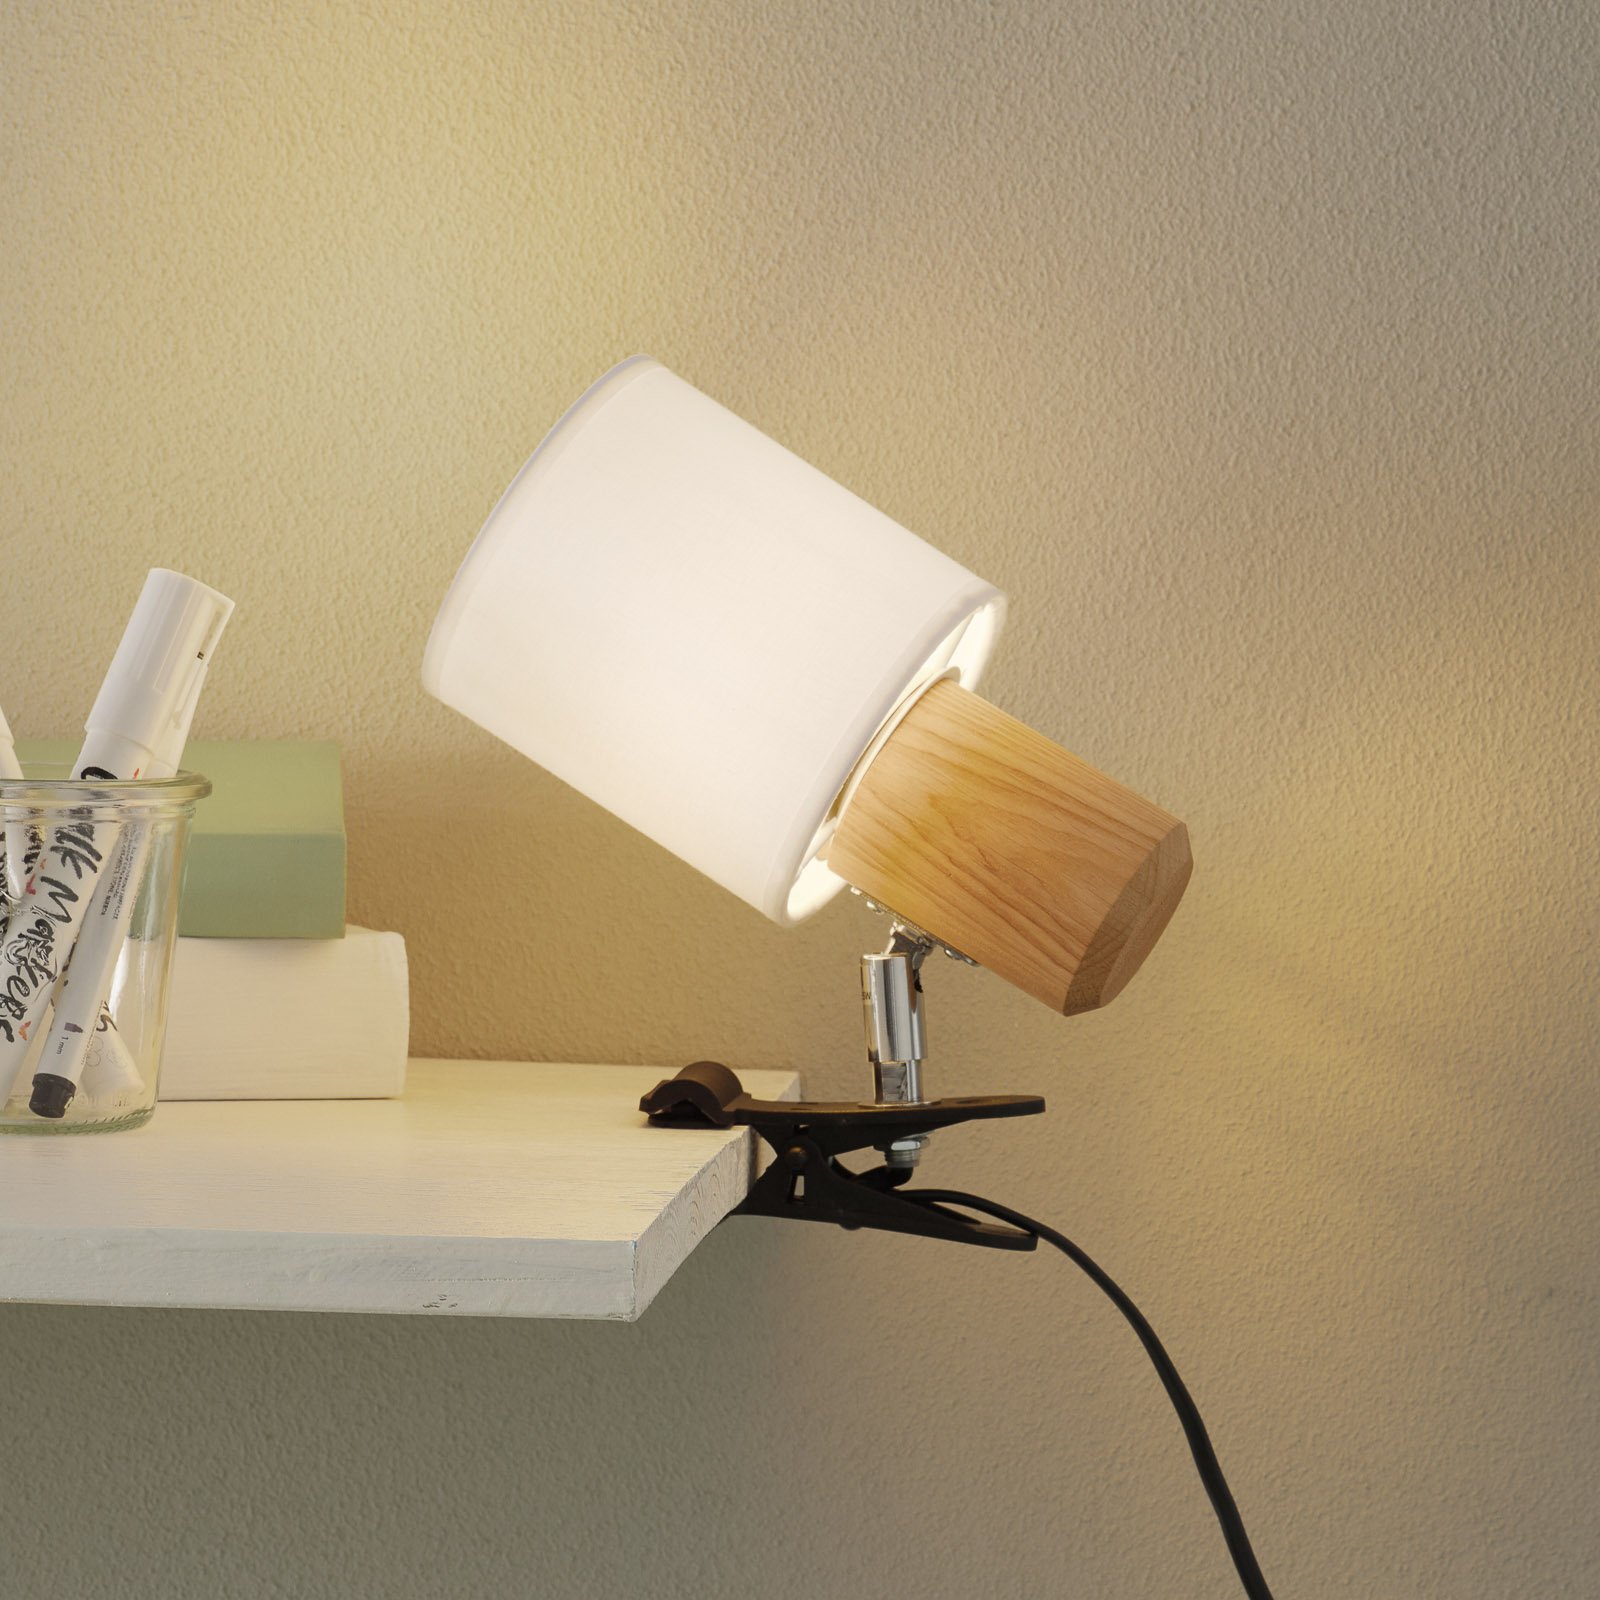 Moderno stezno svjetlo Clampspots s bijelim sjenilom